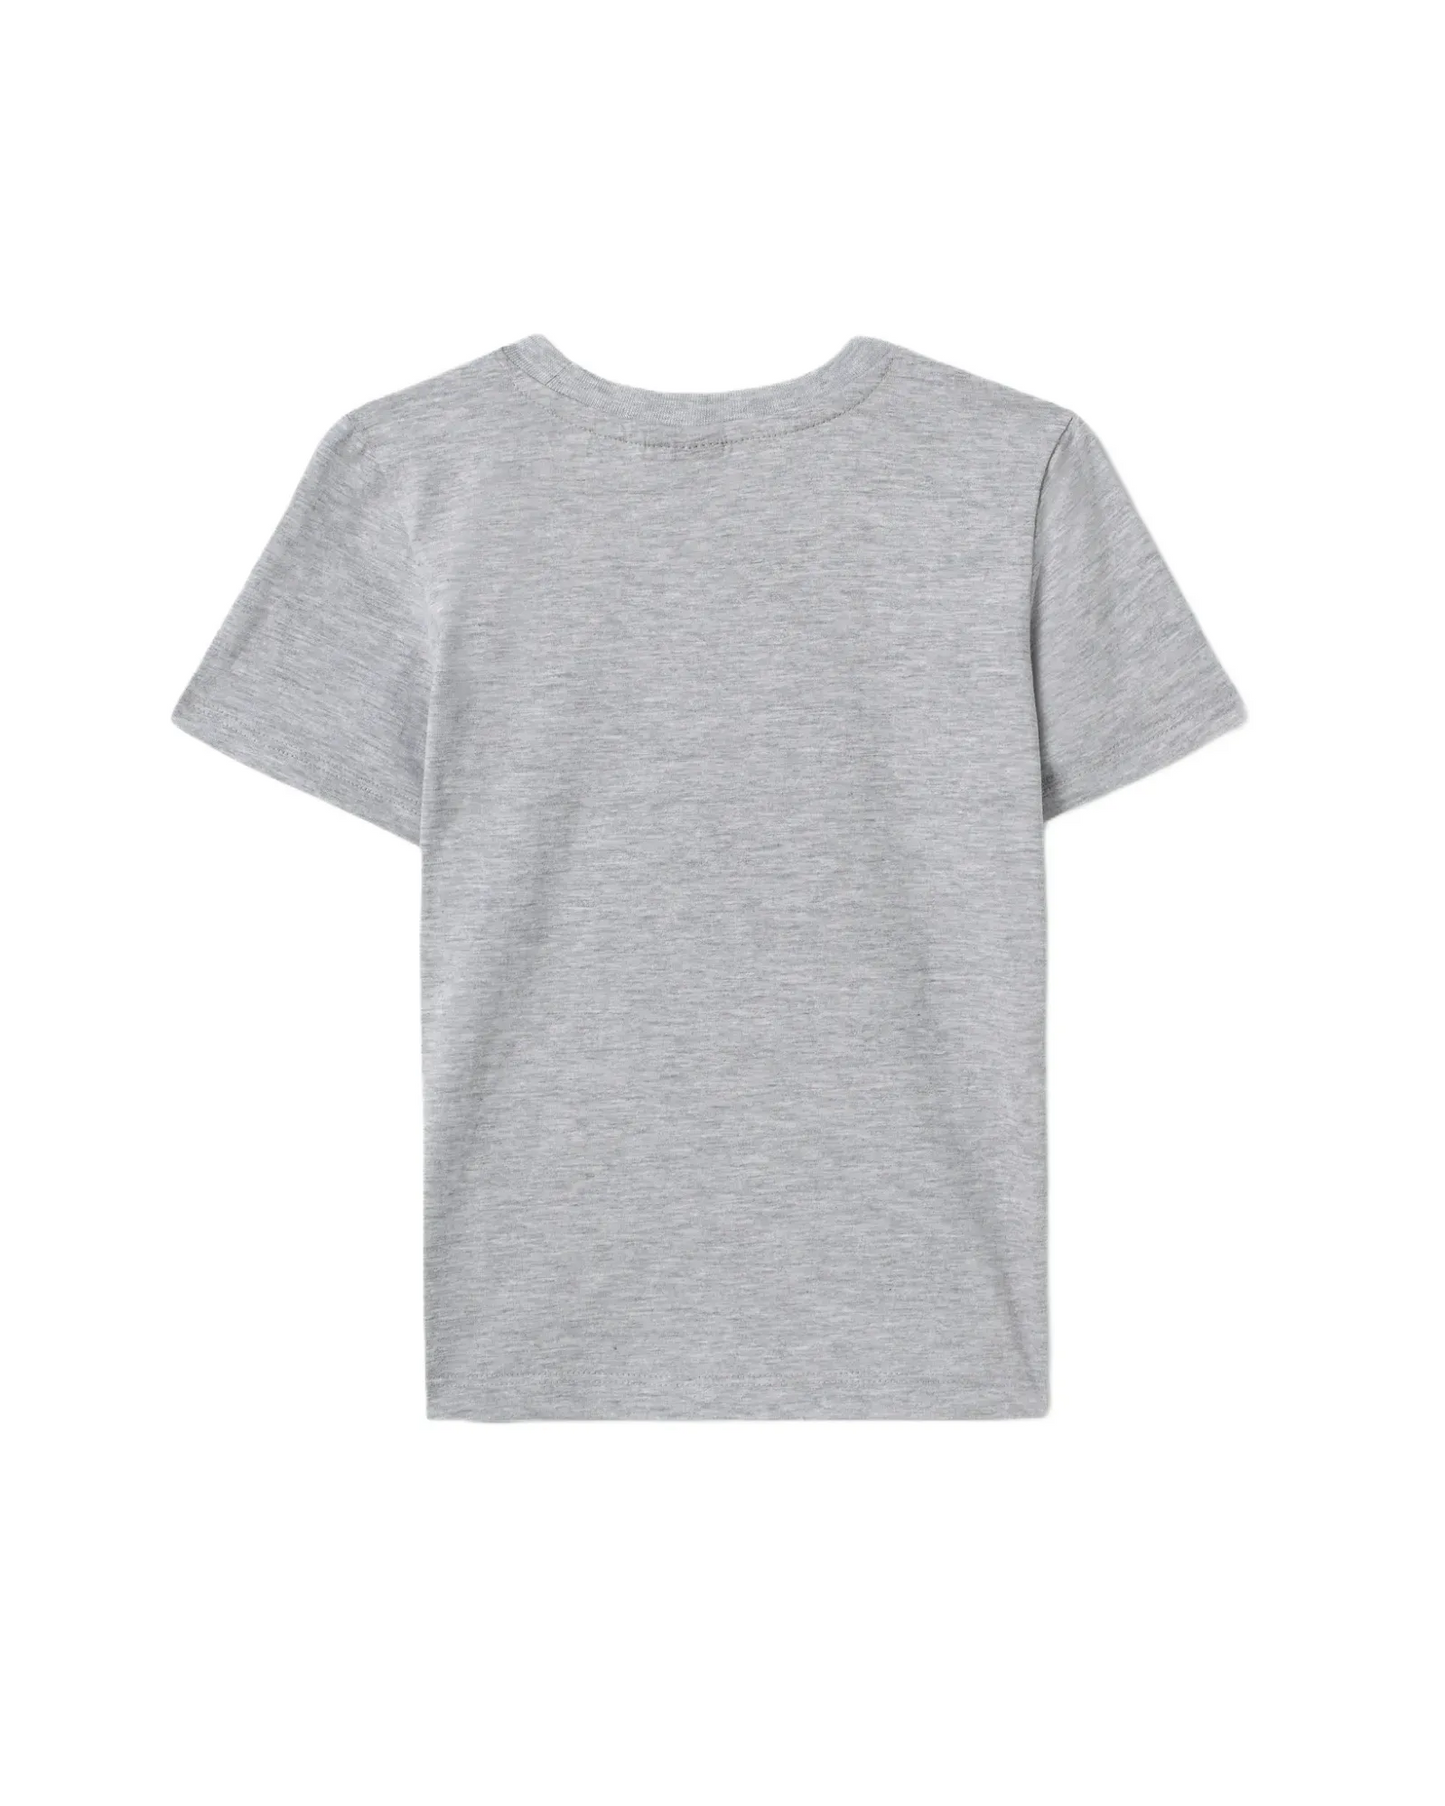 T-shirt gris imprimé ananas - Northcoast